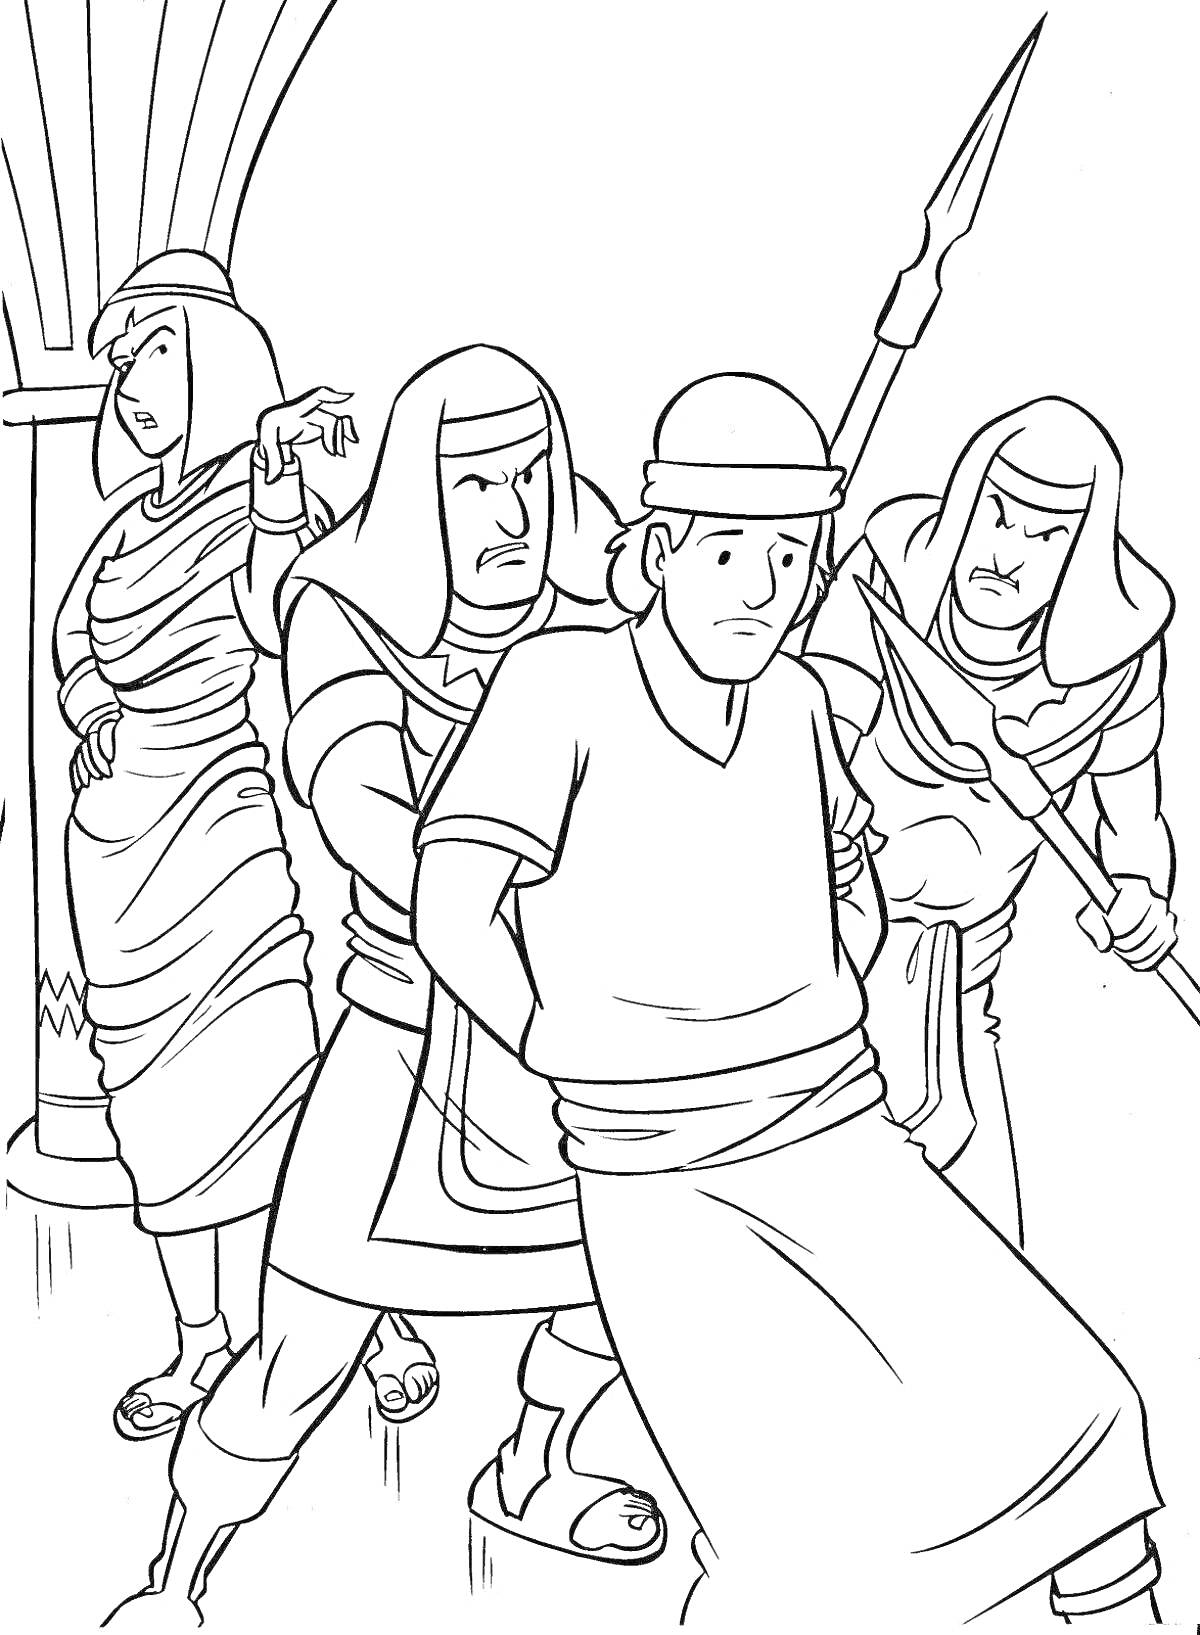 Раскраска Иосиф в плену у египтян, изображение ареста с фигурами четырех людей, копьем и колонной на заднем плане